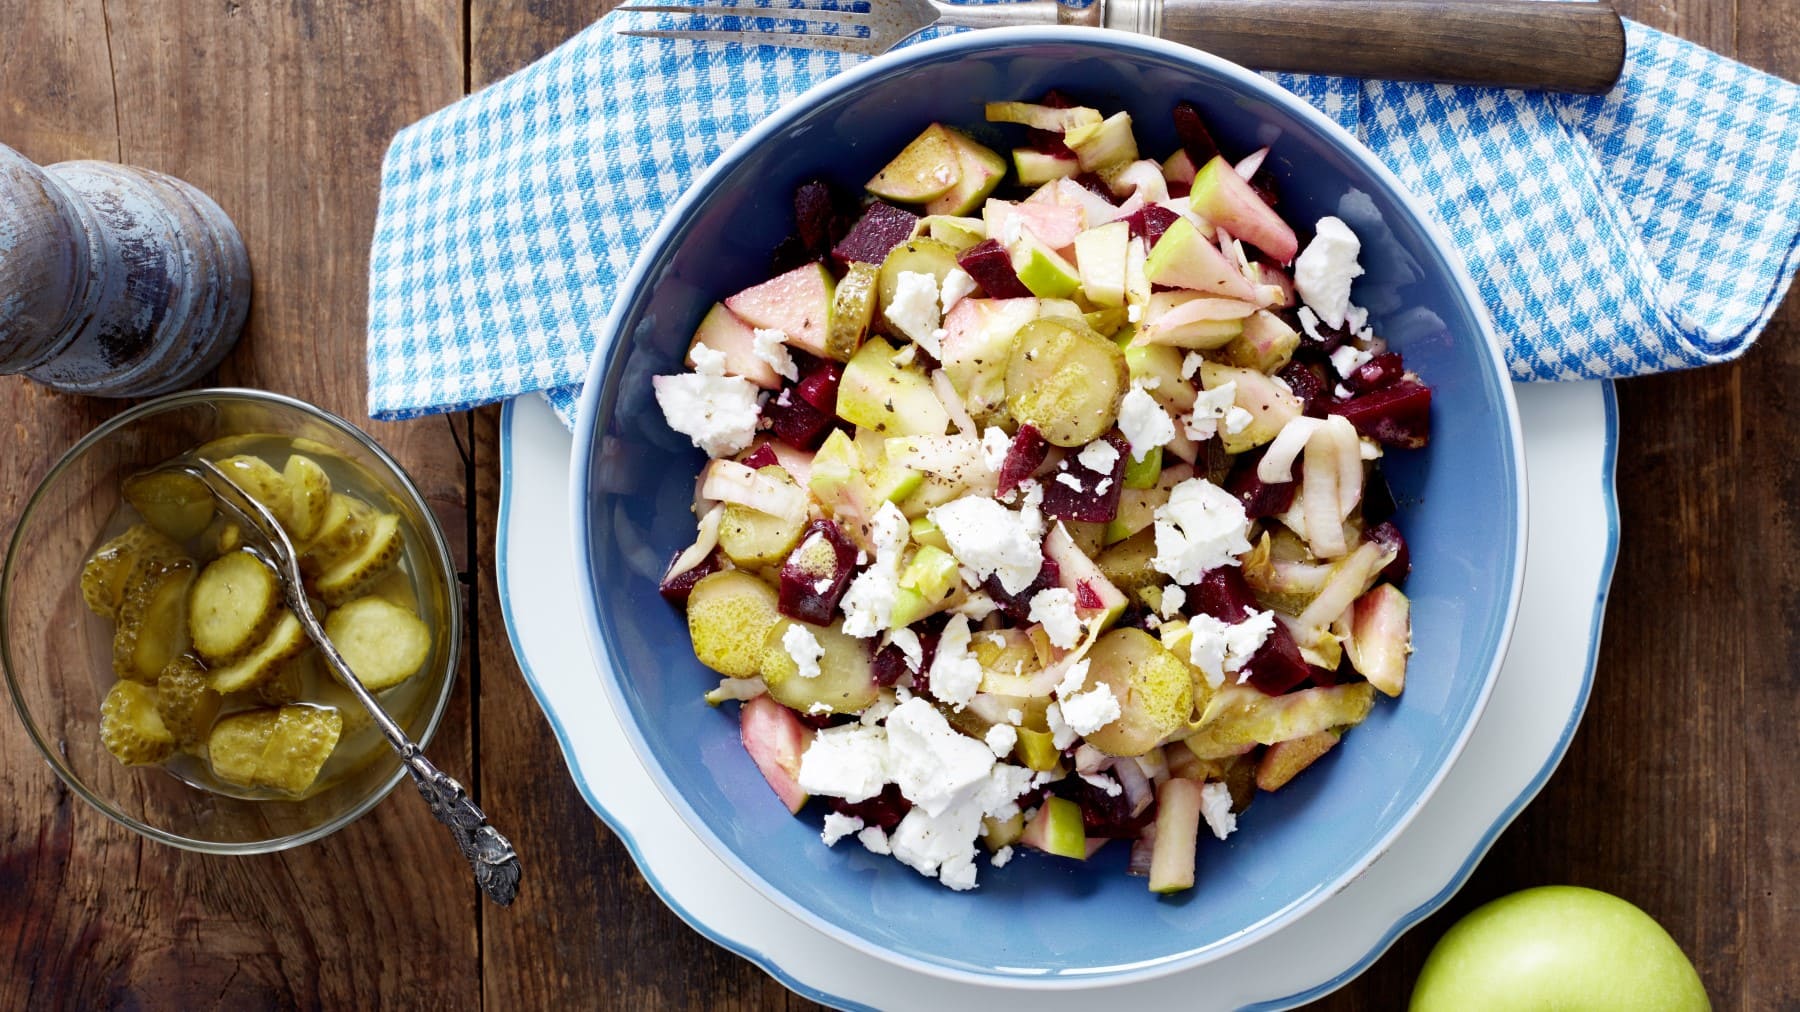 Rote-Bete-Salat mit Schafskäse in blauer Schüssel, daneben Gewürzmühle, saure Gurken und ein grüner Apfel vor Holzhintergrund.